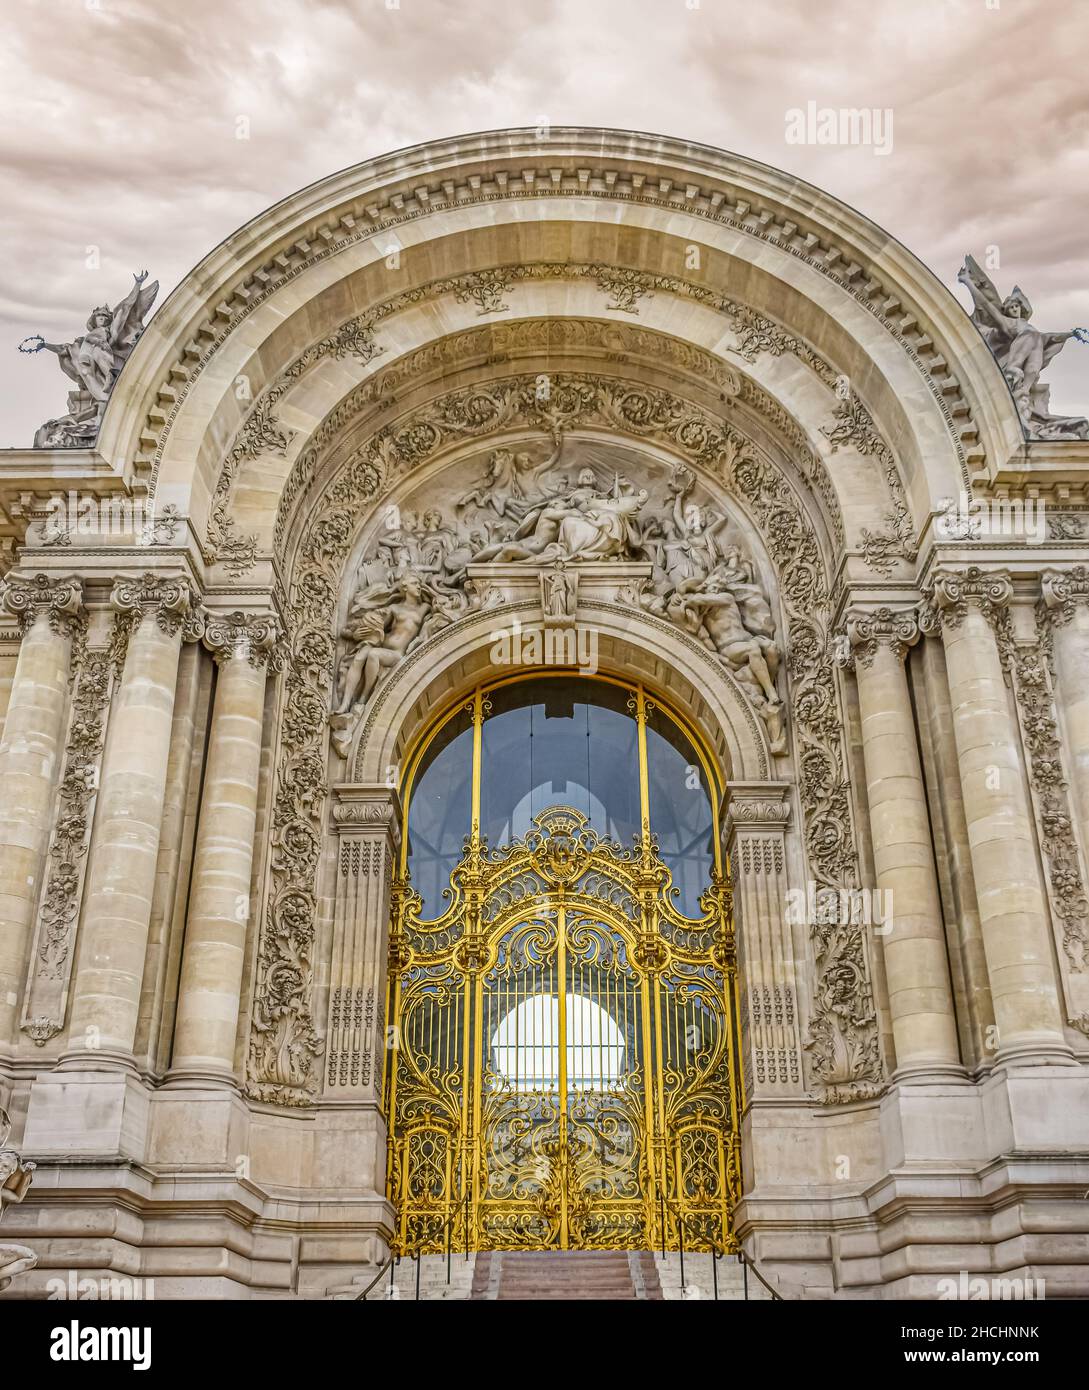 Pórtico monumental con columnas jónicas del palacio de bellas artes en Paris, Francia-Edit.tif Stock Photo